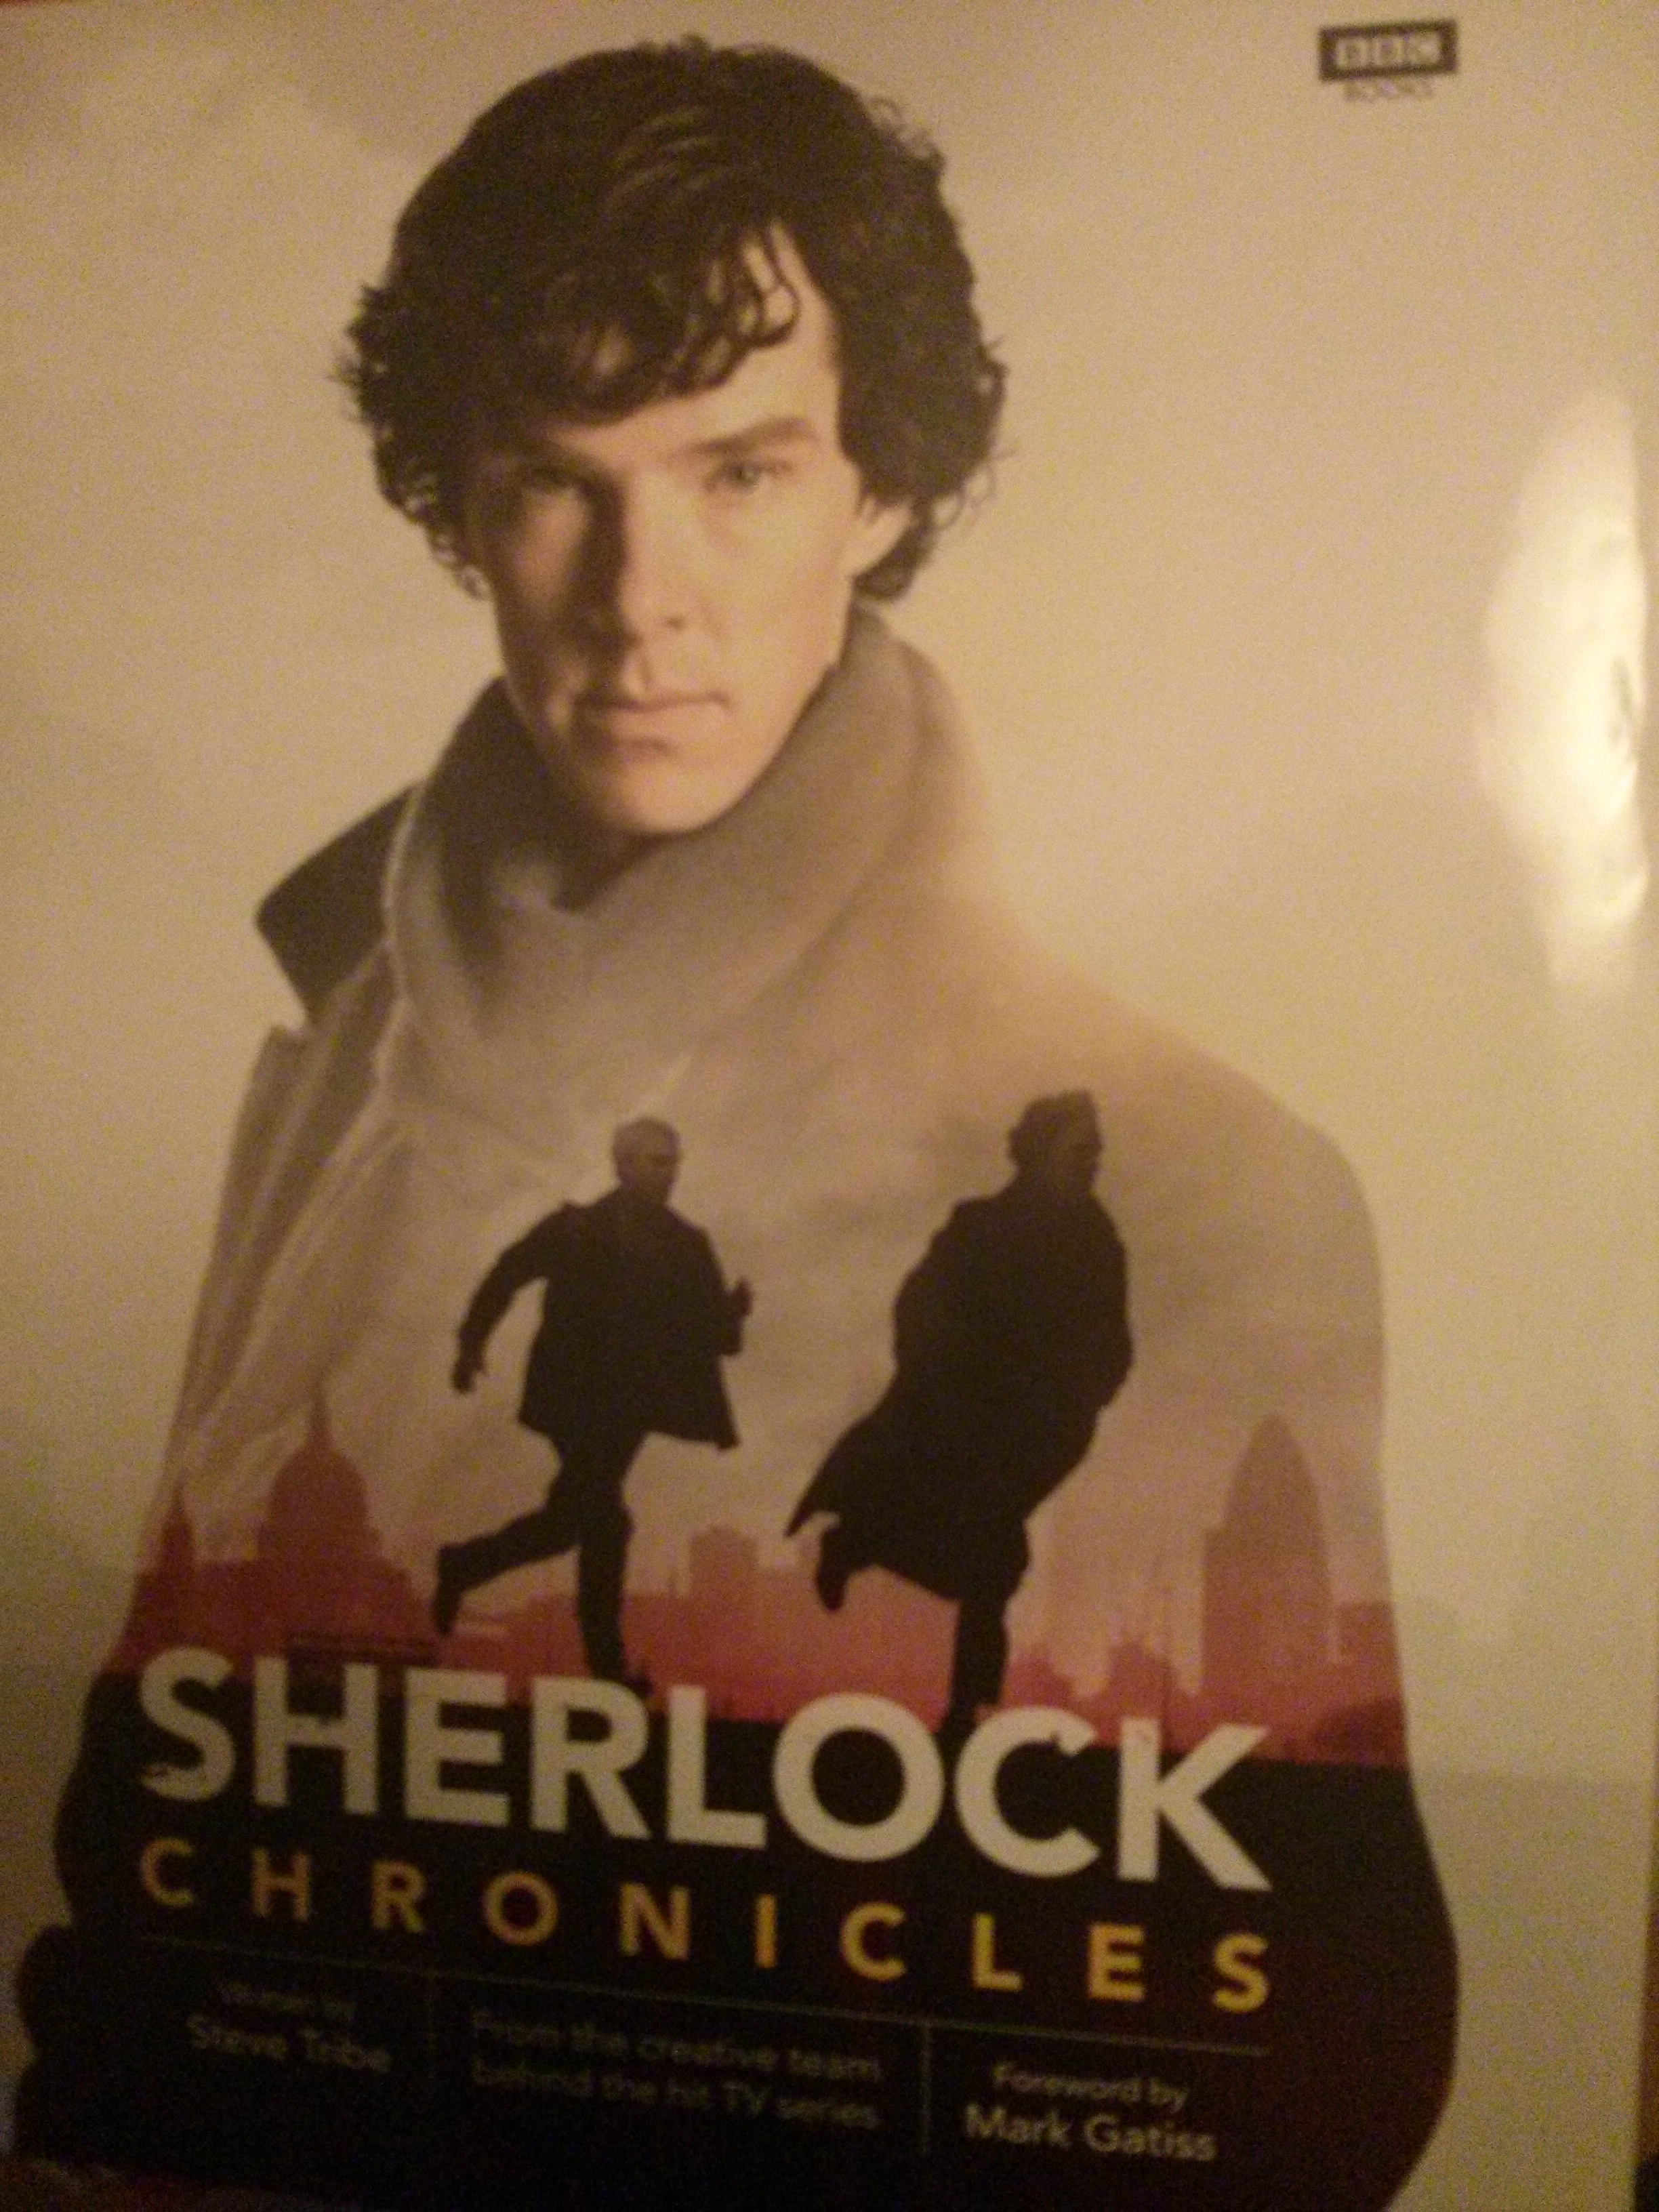 Sherlock Chronicles. Photo: pb